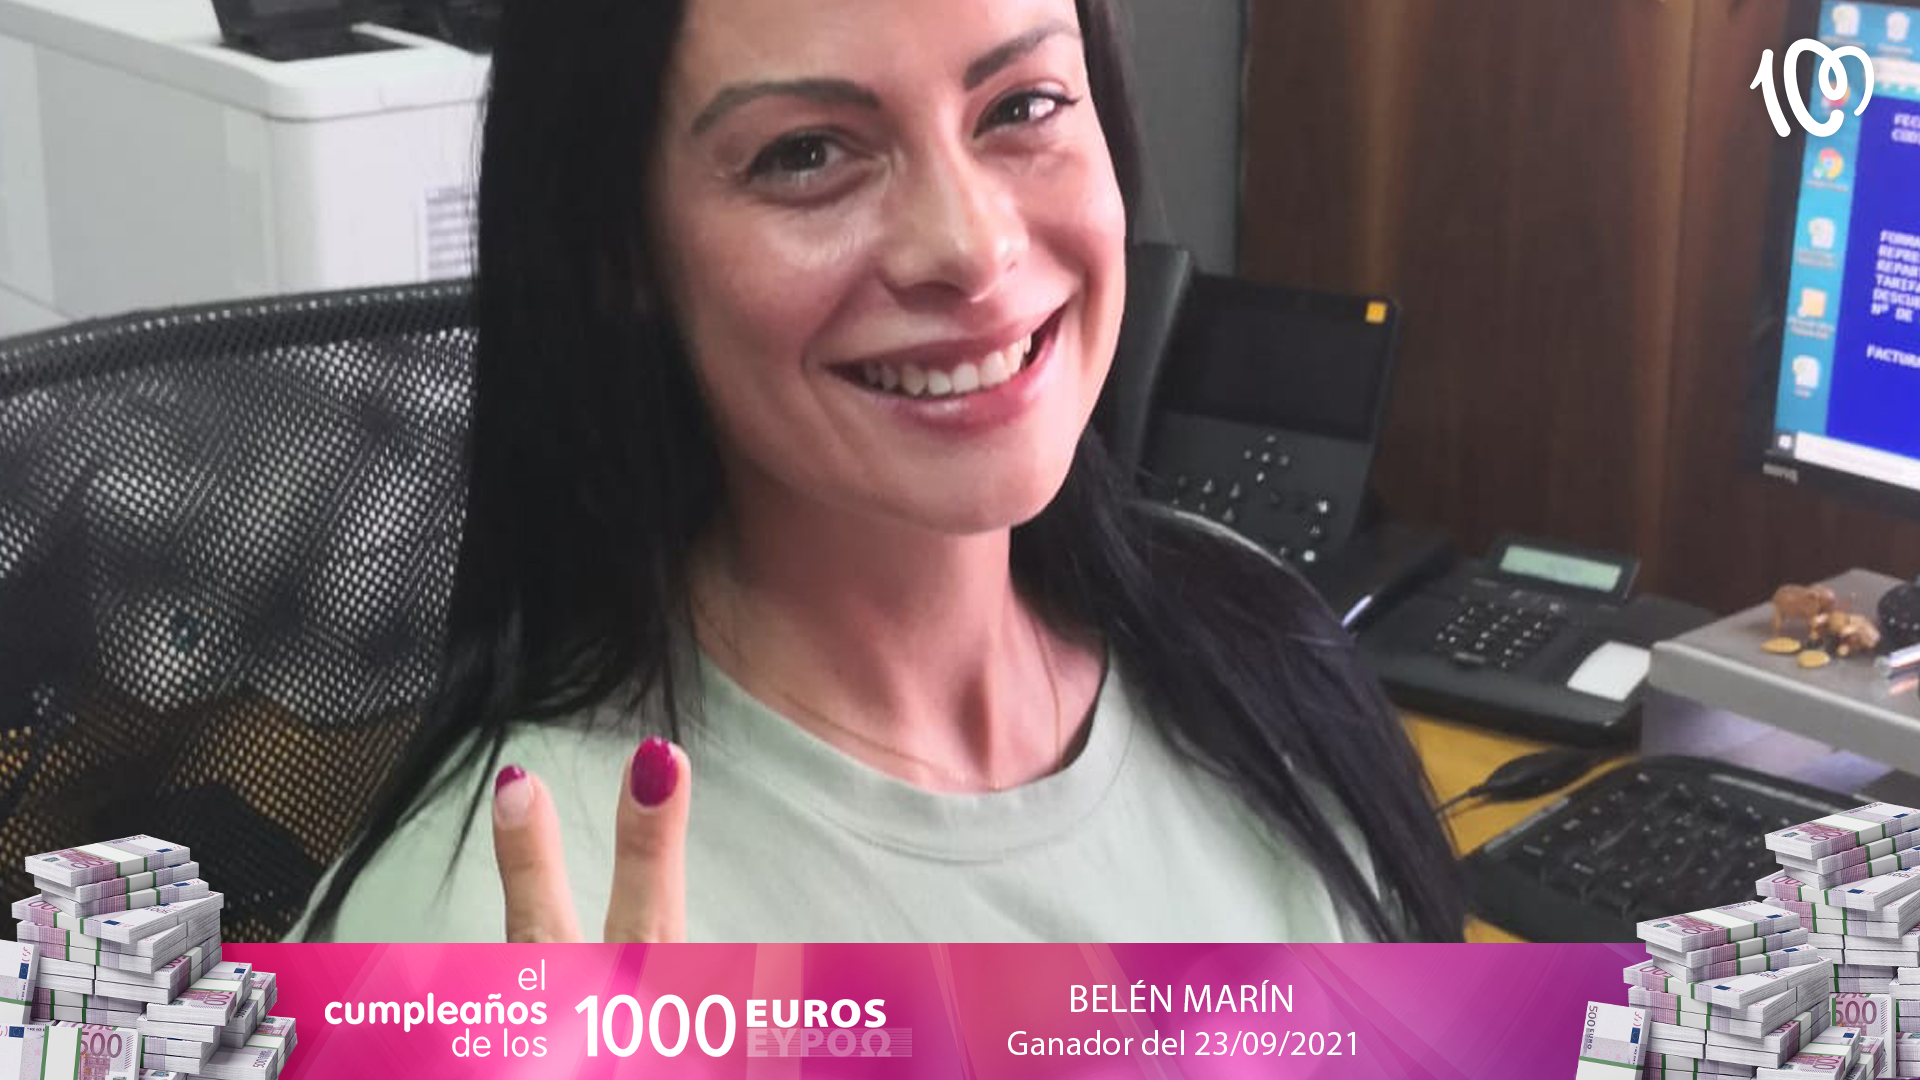 Belén, ganadora de 1.000 euros: "El 23 tiene un significado muy importante para mí"